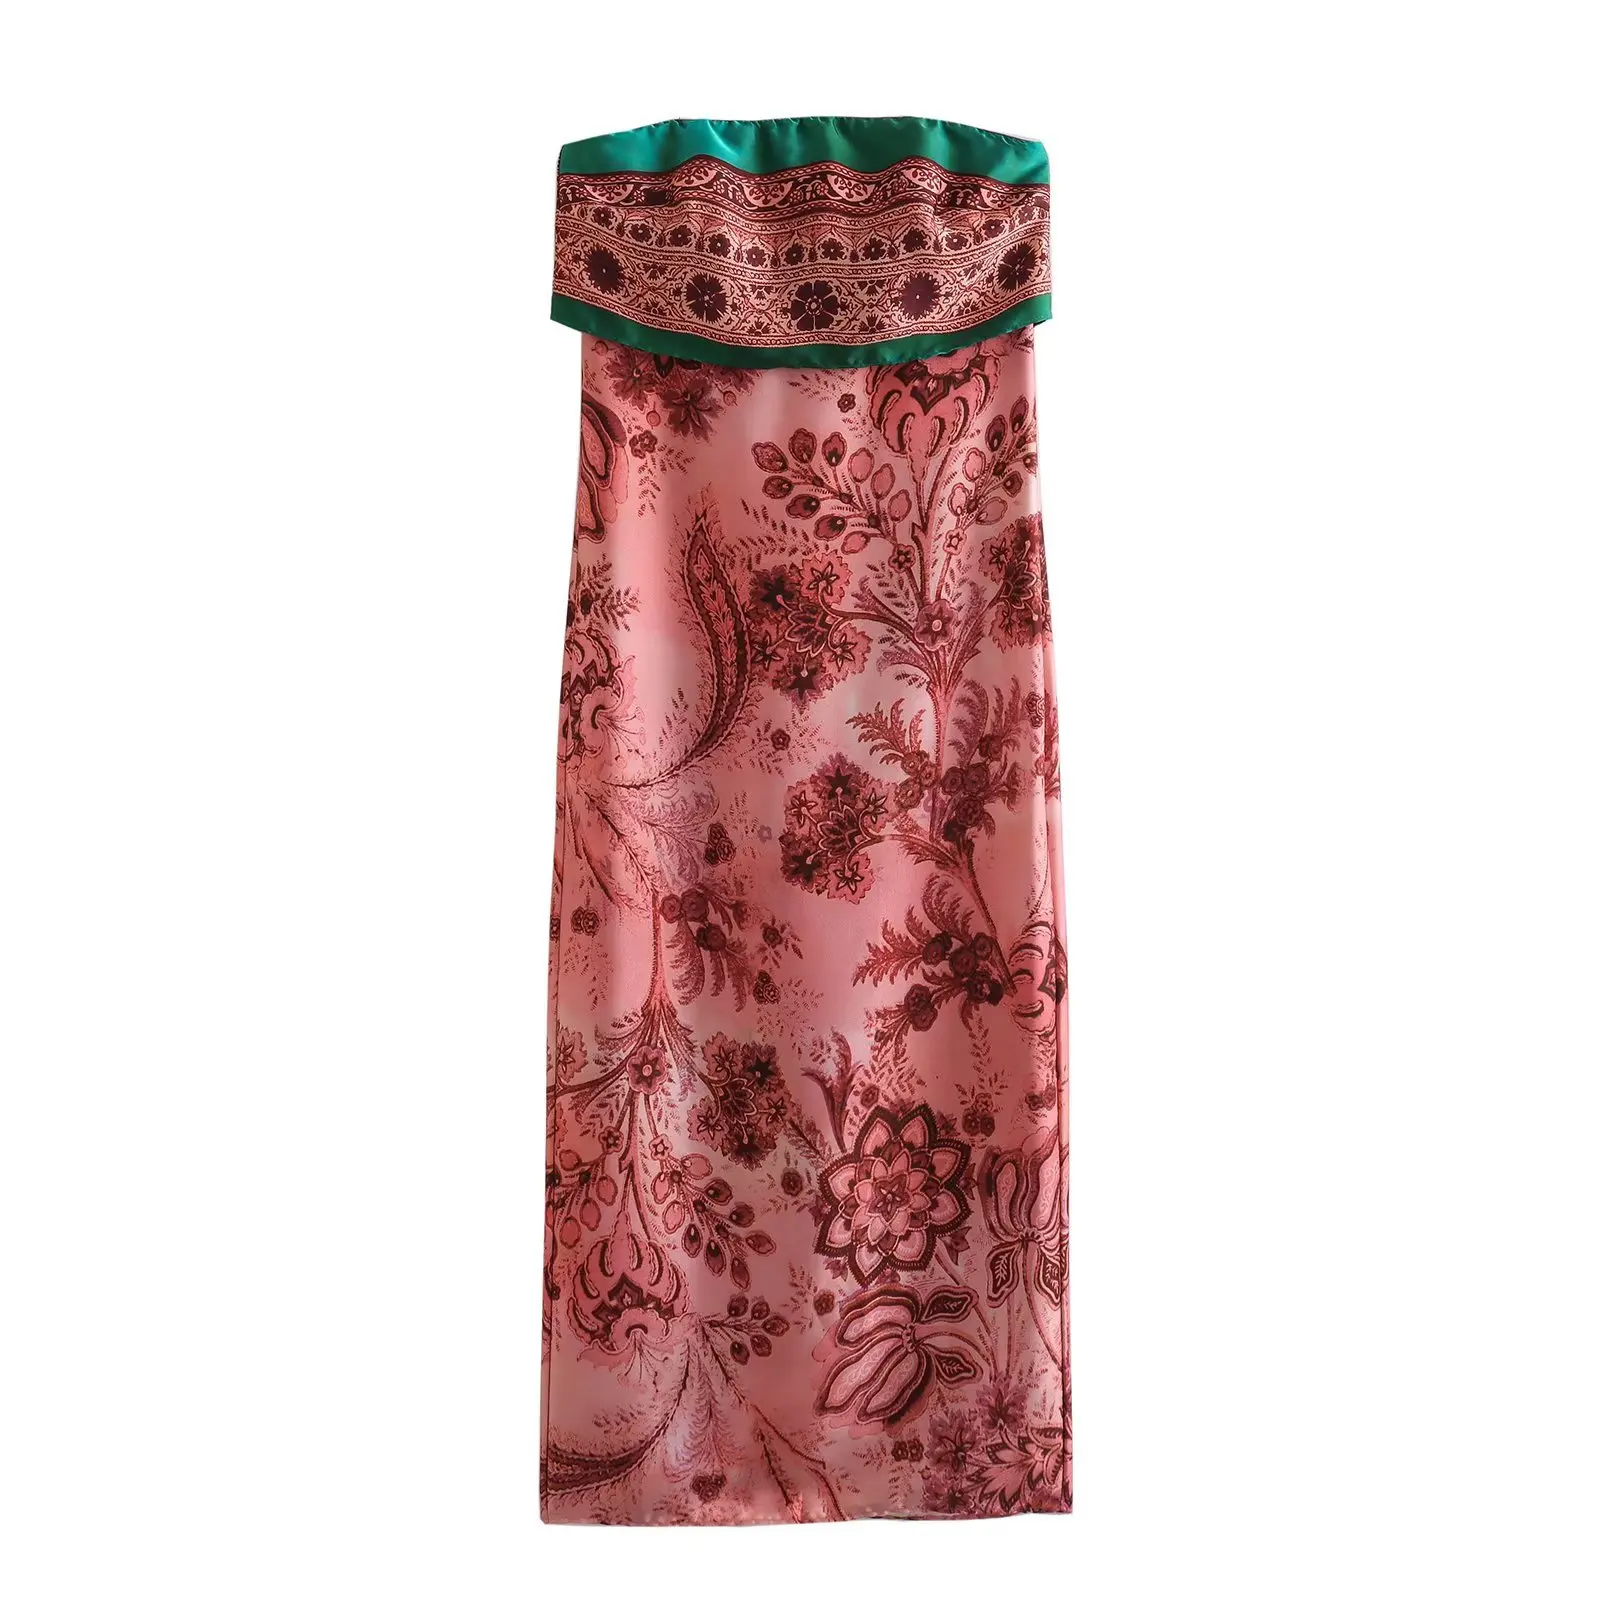 

Женское платье с принтом без бретелек, розовое платье средней длины Y2King vadiming, пикантное праздничное платье в стиле «Лолита», XX9643, лето 2023